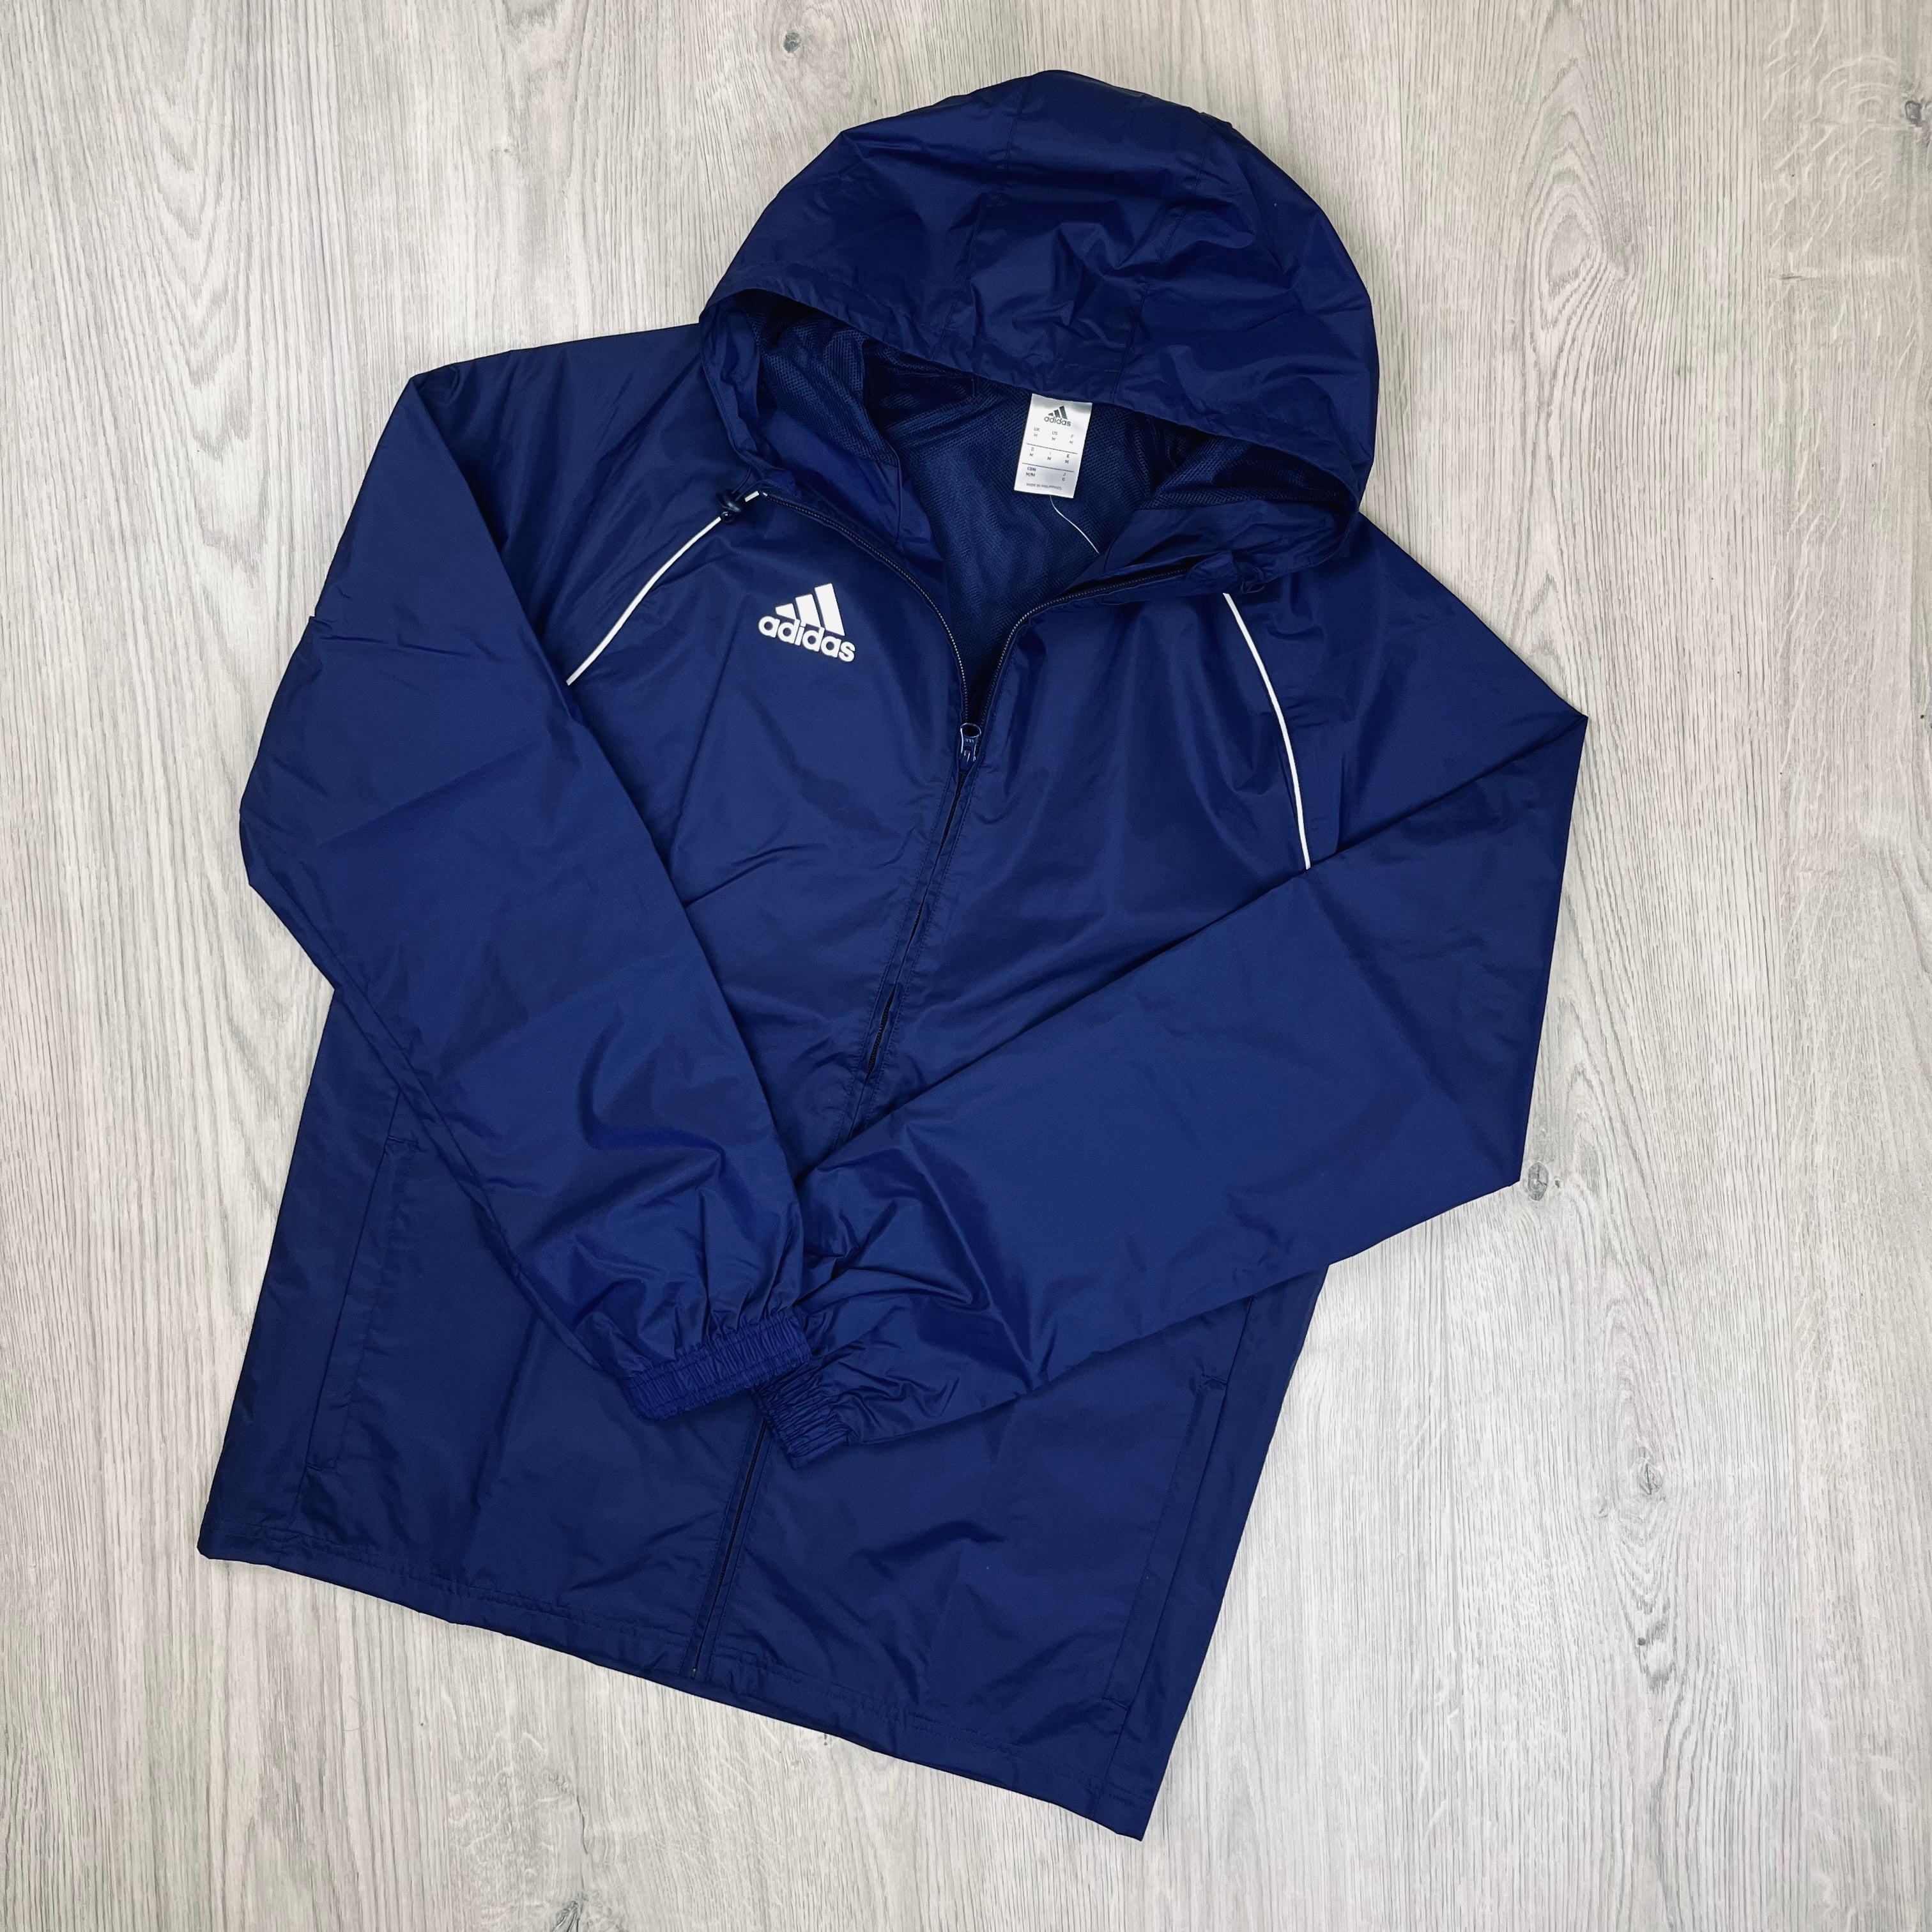 Adidas Core18 Jacket